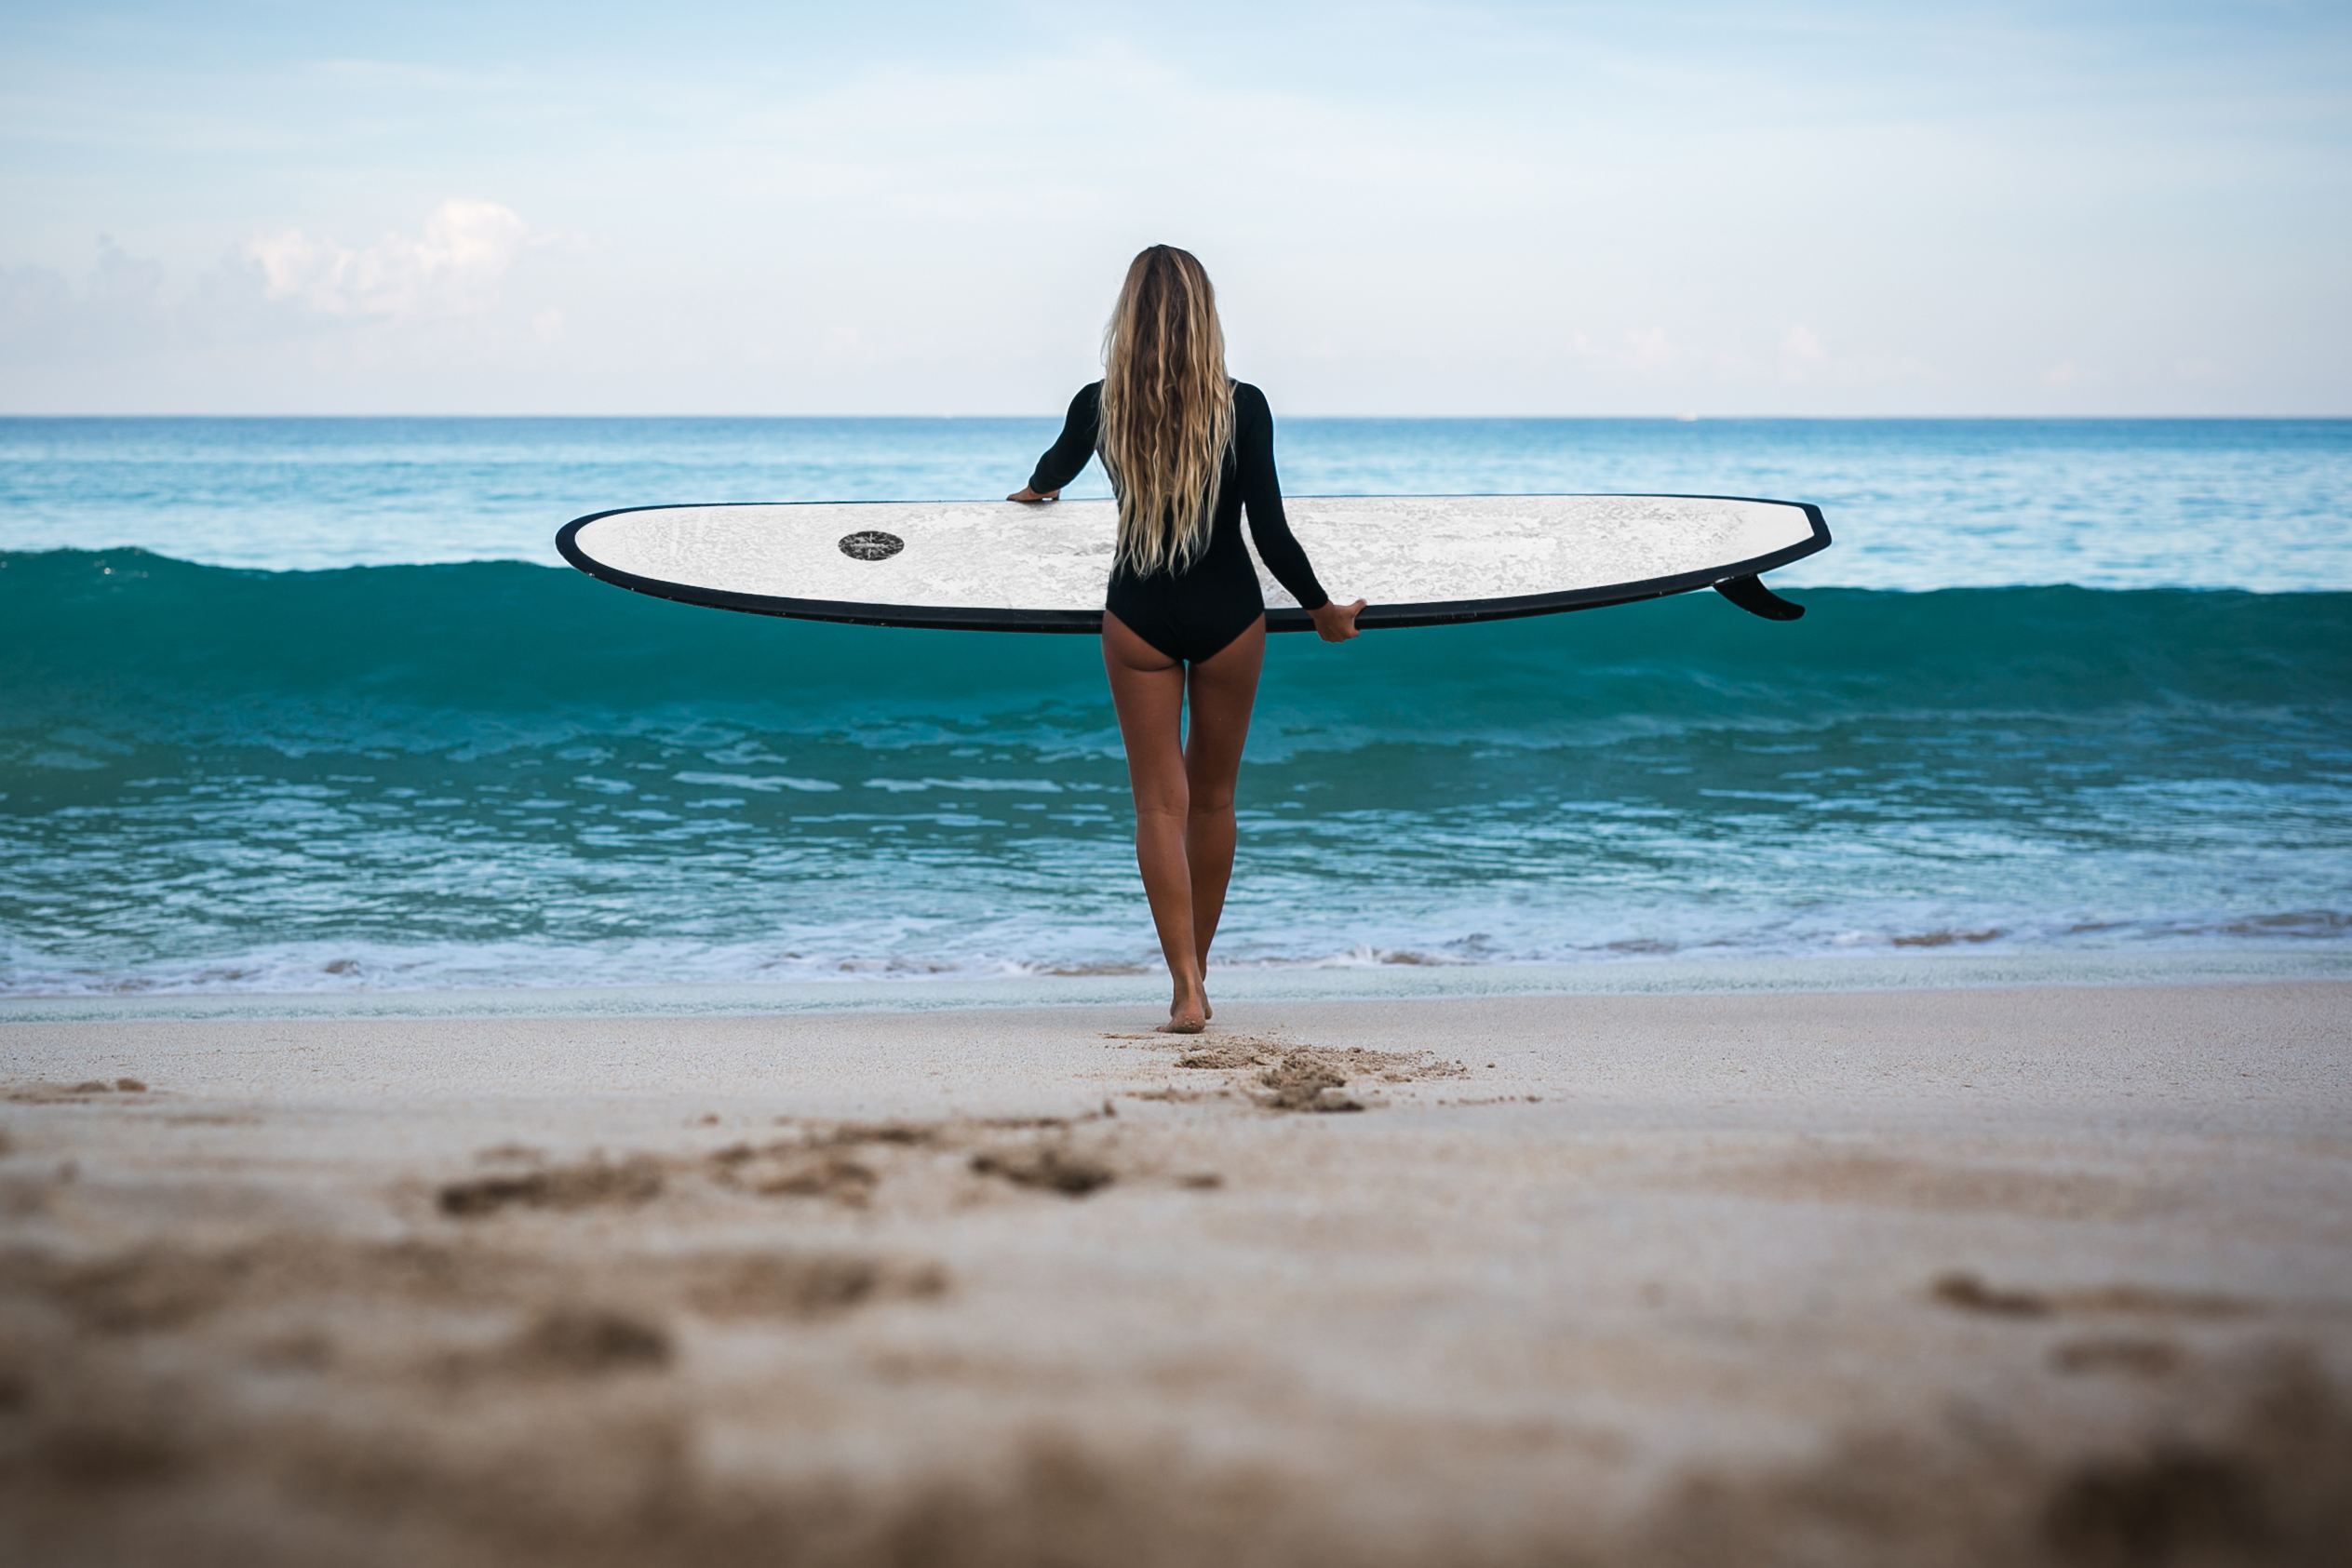 Surfer Girl Wallpapers